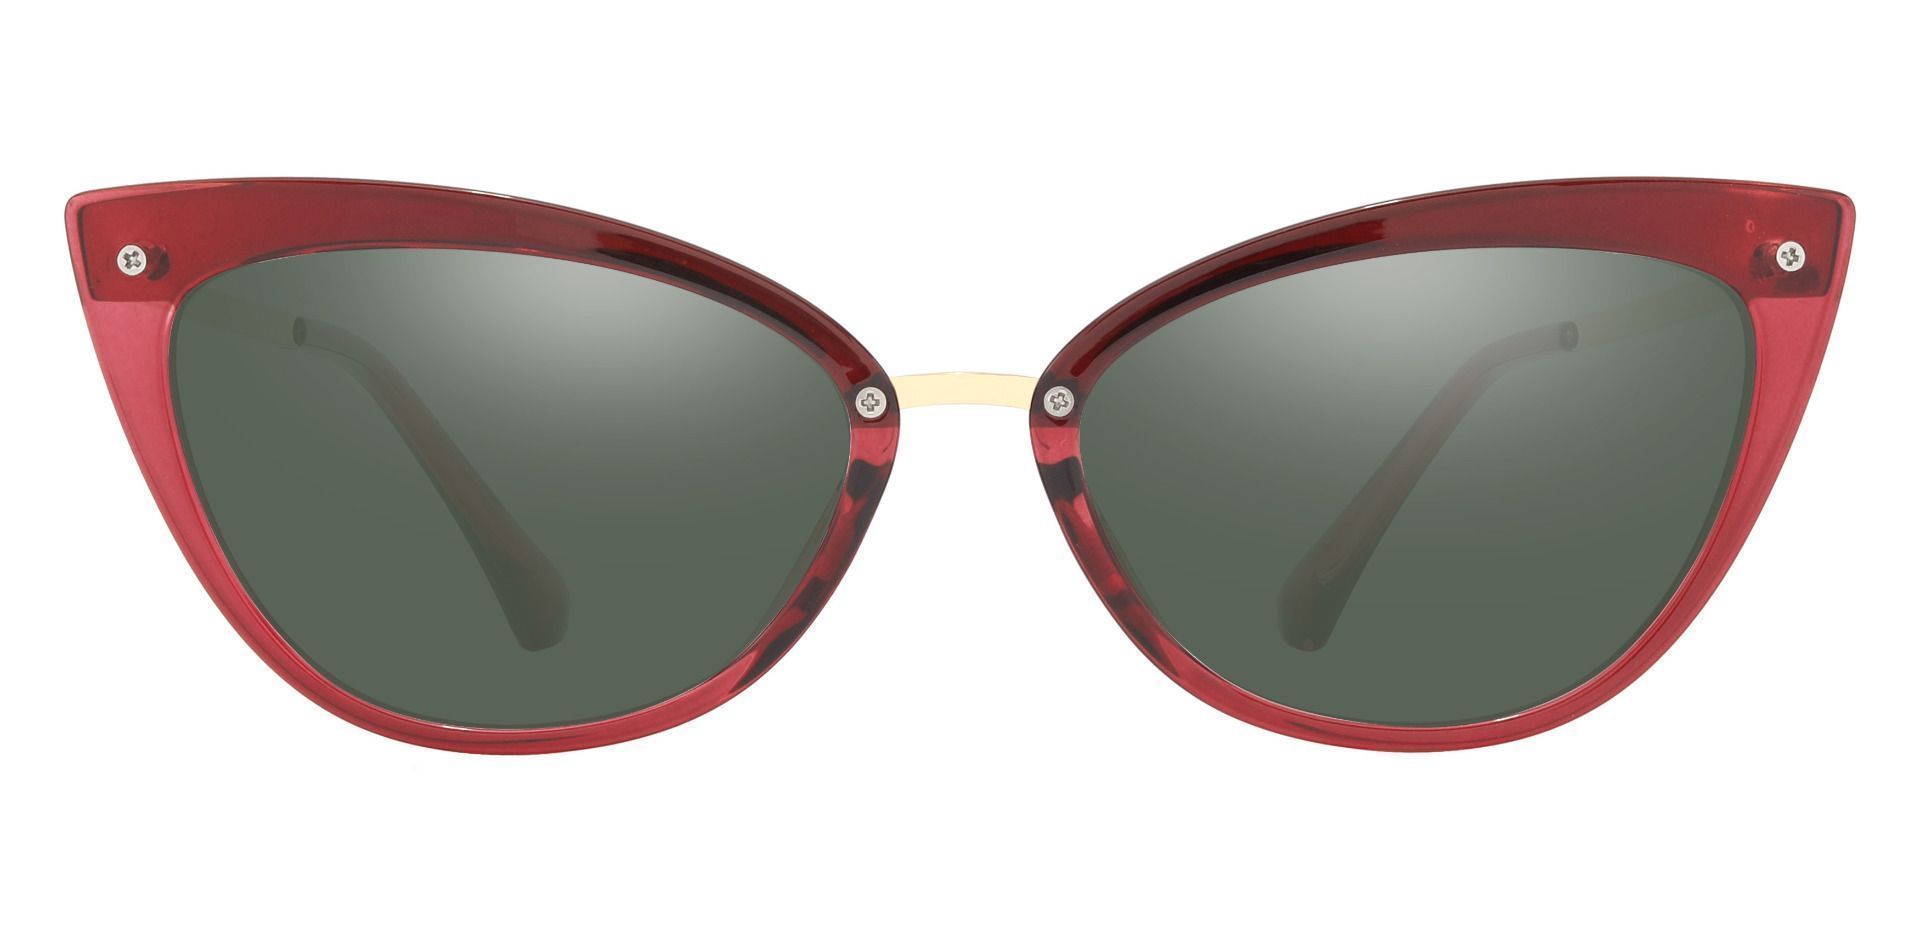 Glenda Cat Eye Prescription Sunglasses - Red Frame With Green Lenses